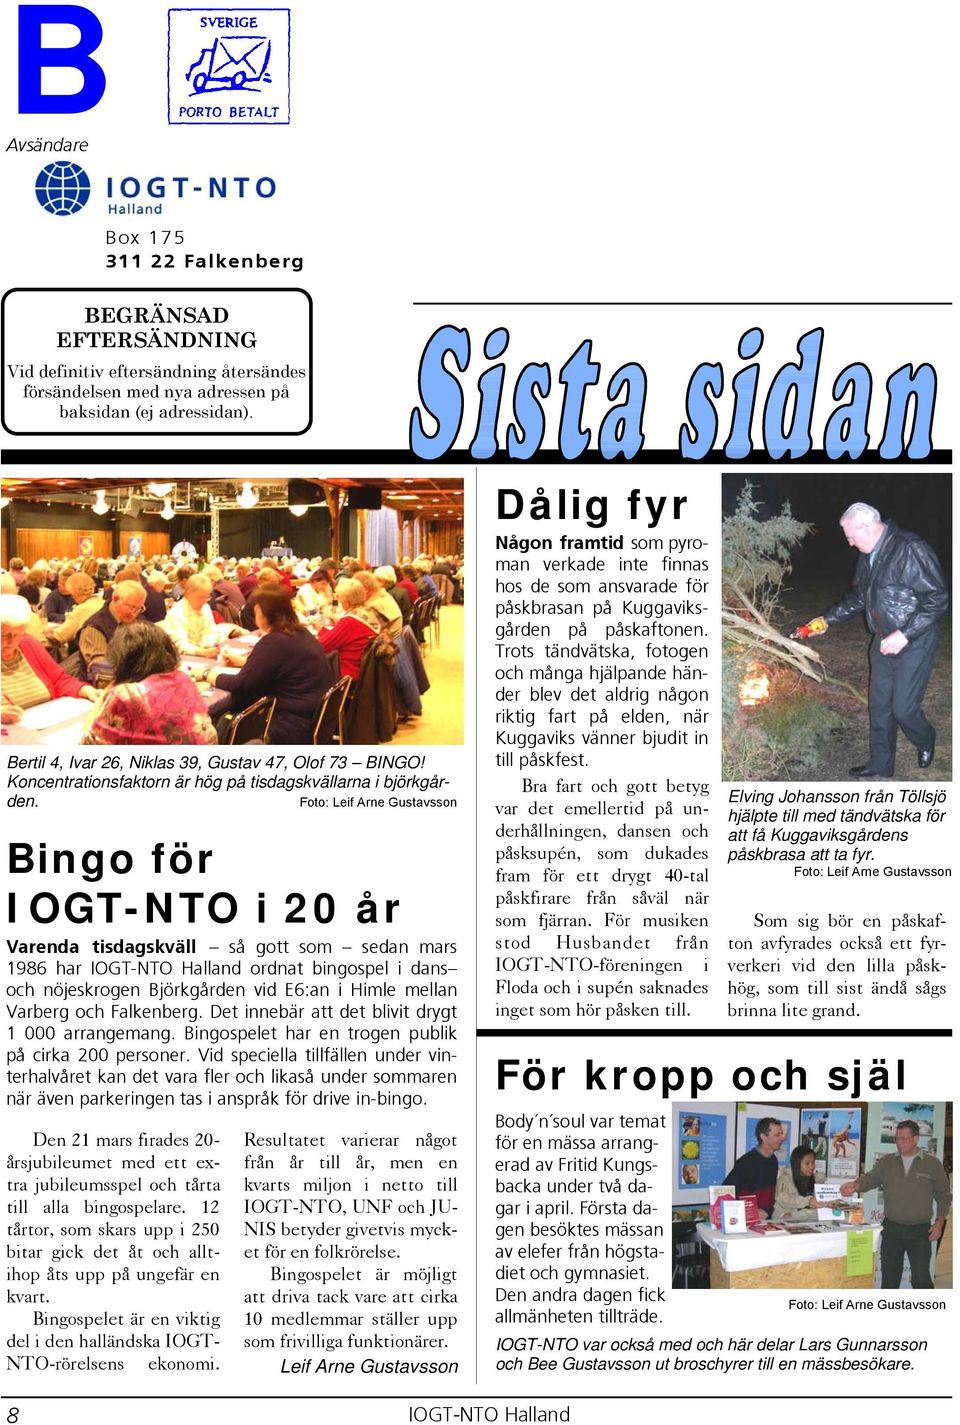 Bingo för IOGT-NTO i 20 år Varenda tisdagskväll så gott som sedan mars 1986 har ordnat bingospel i dans och nöjeskrogen Björkgården vid E6:an i Himle mellan Varberg och Falkenberg.